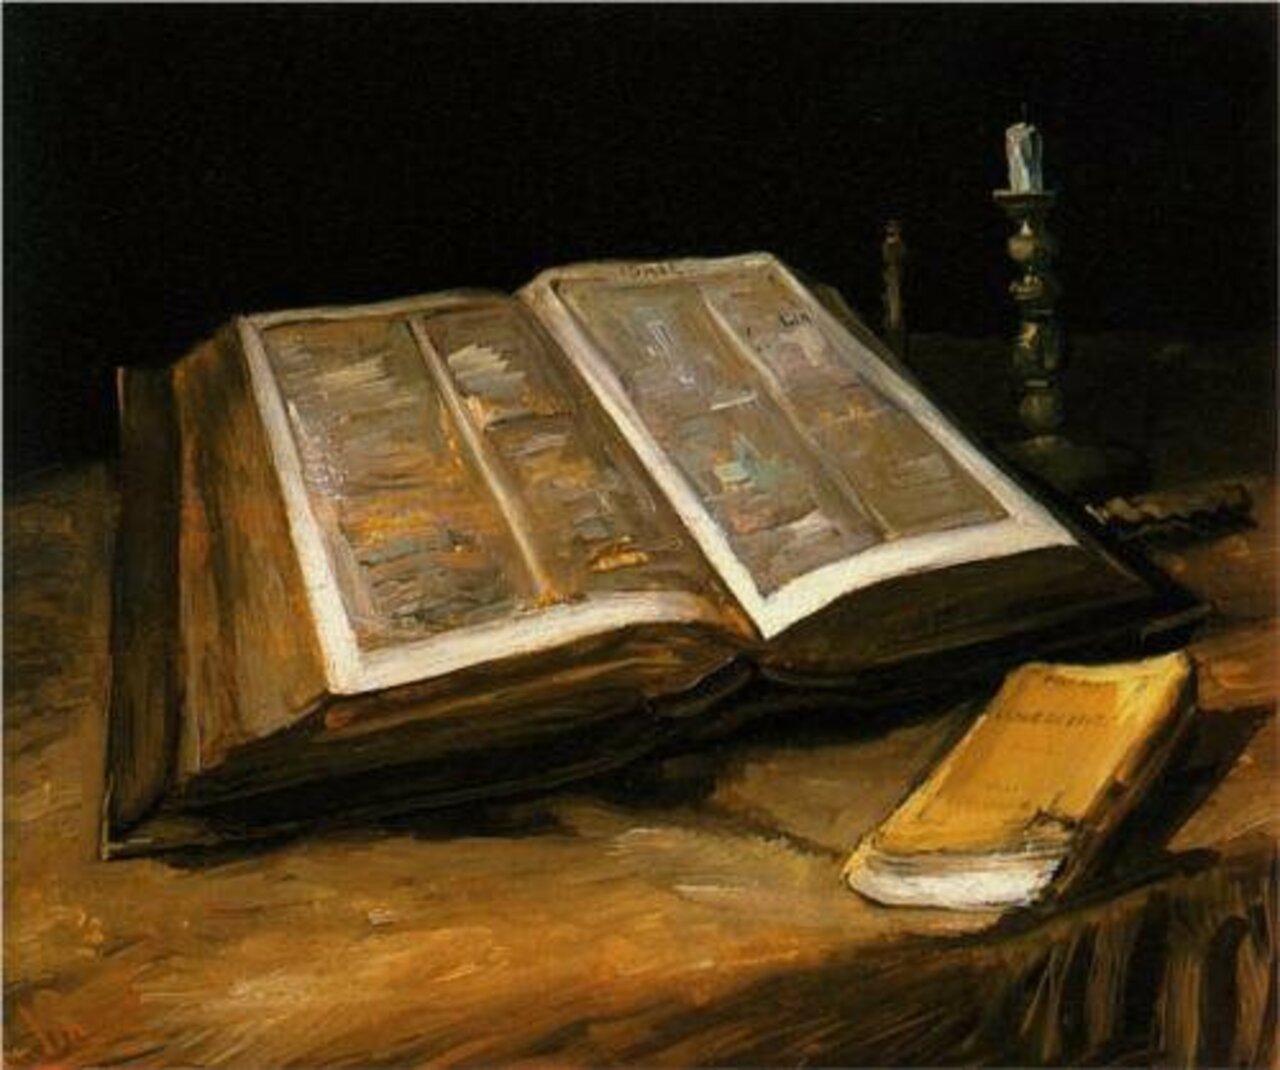 VAN GOGH, "STILL LIFE WITH BIBLE" 1885 #vangogh #vincent #art #artwit #twitart #iloveart #artist #followart #gesture https://t.co/cyVn7BDF6T